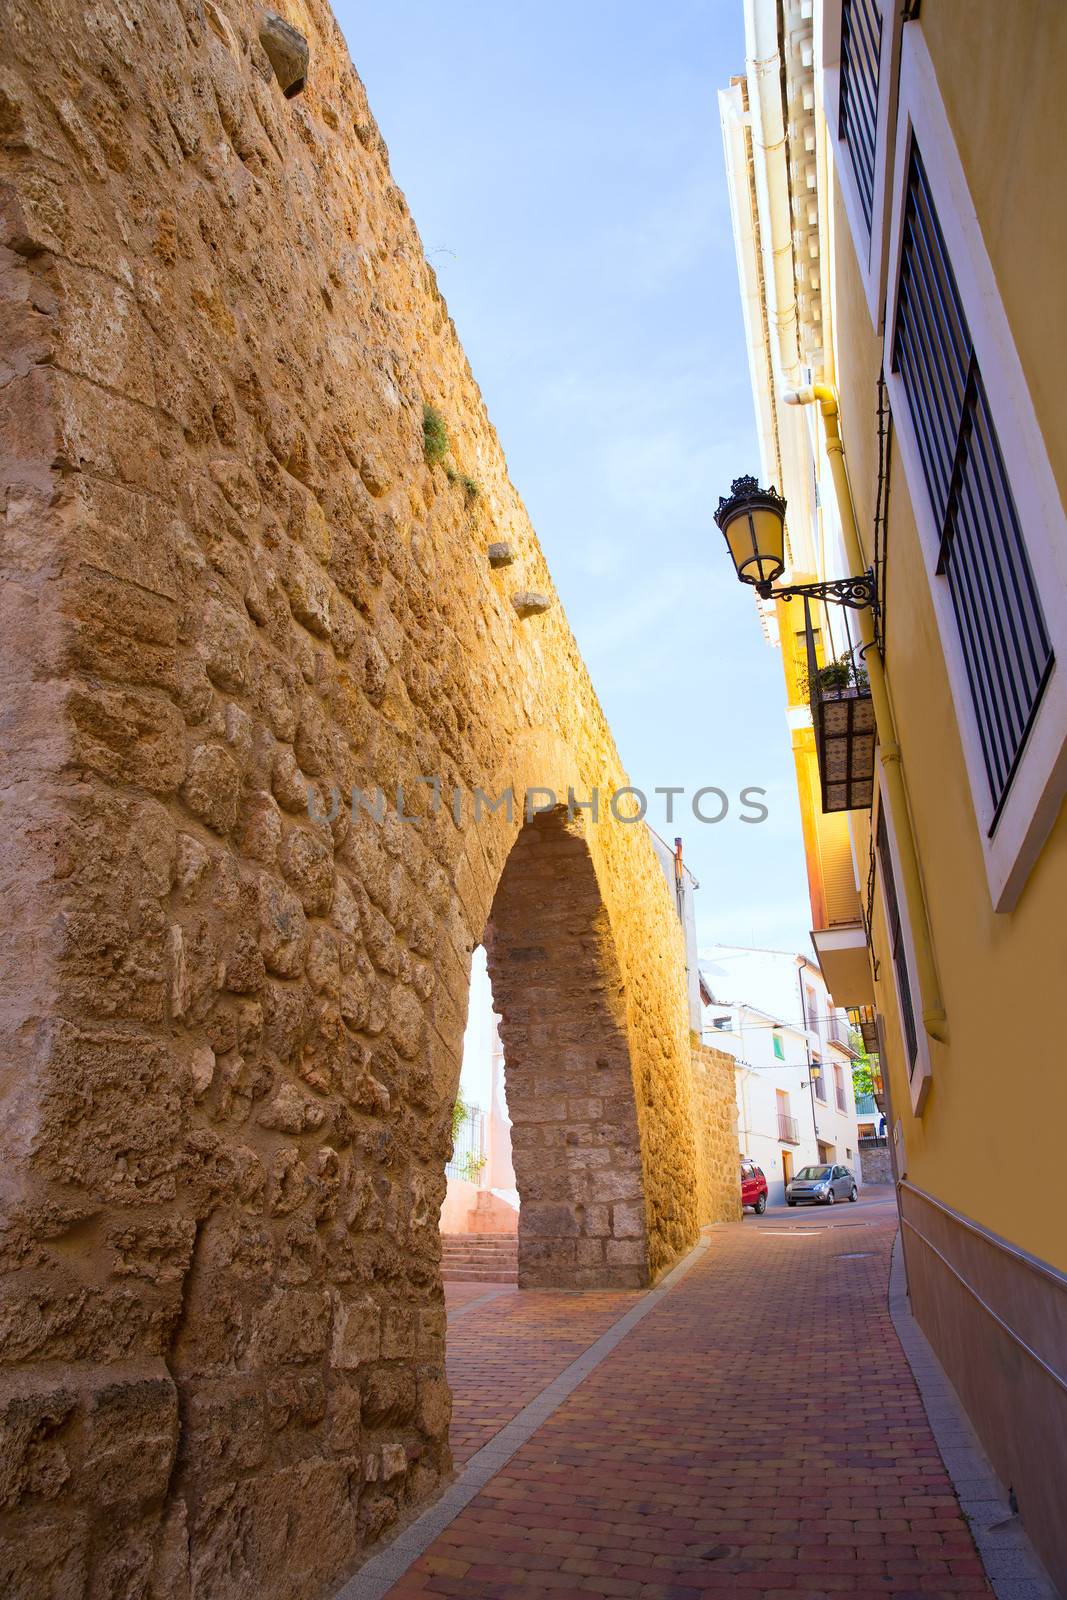 Segorbe Castellon Torre del Verdugo medieval Muralla Spain by lunamarina